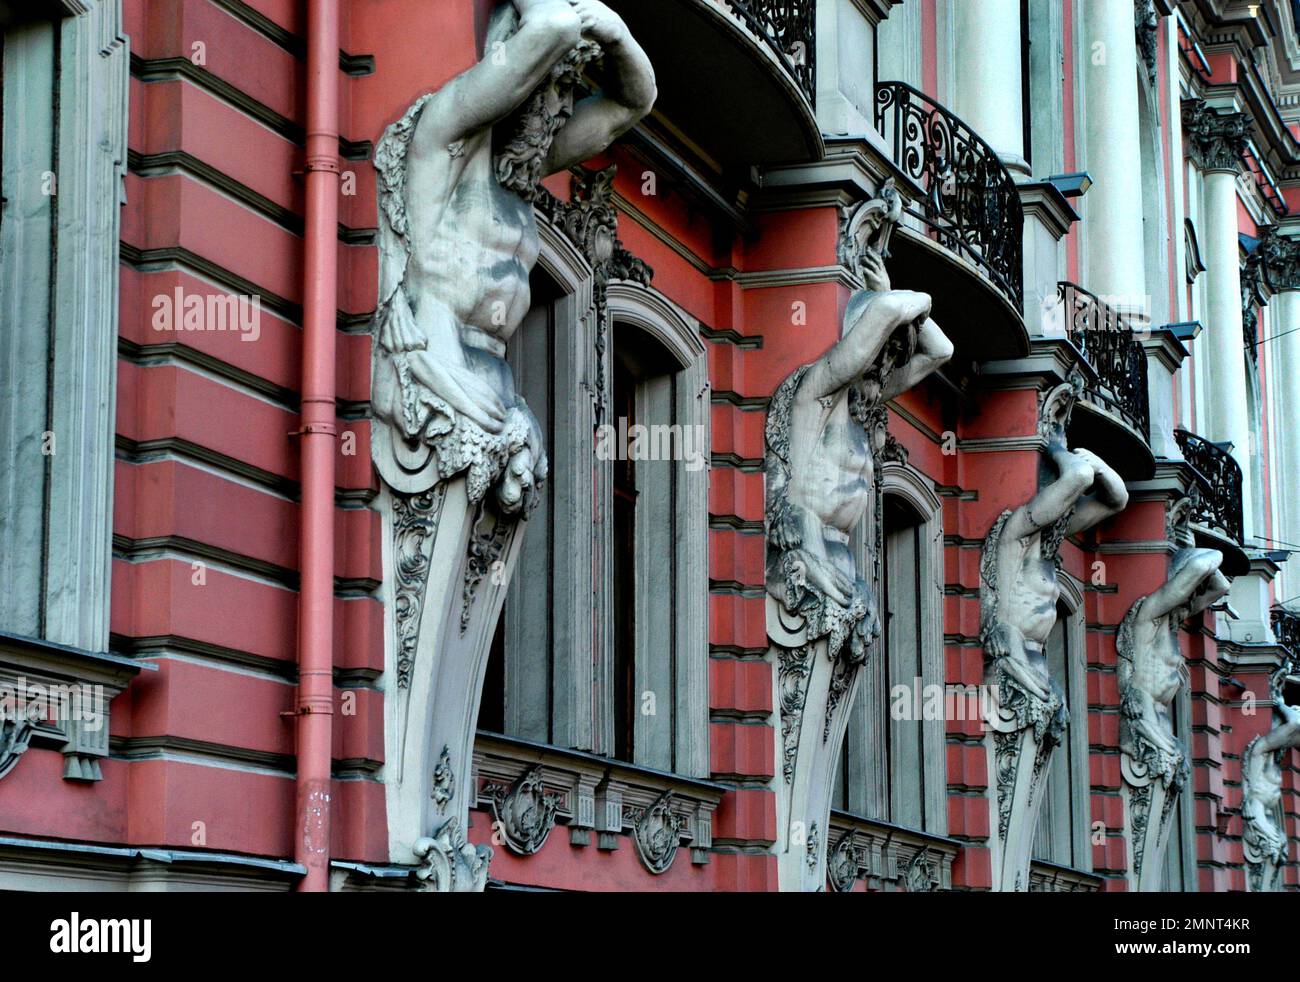 Russie, St. Petersbourg, détail d'un bâtiment sur Nevsky Prospekt, le boulevard principal de la ville Banque D'Images